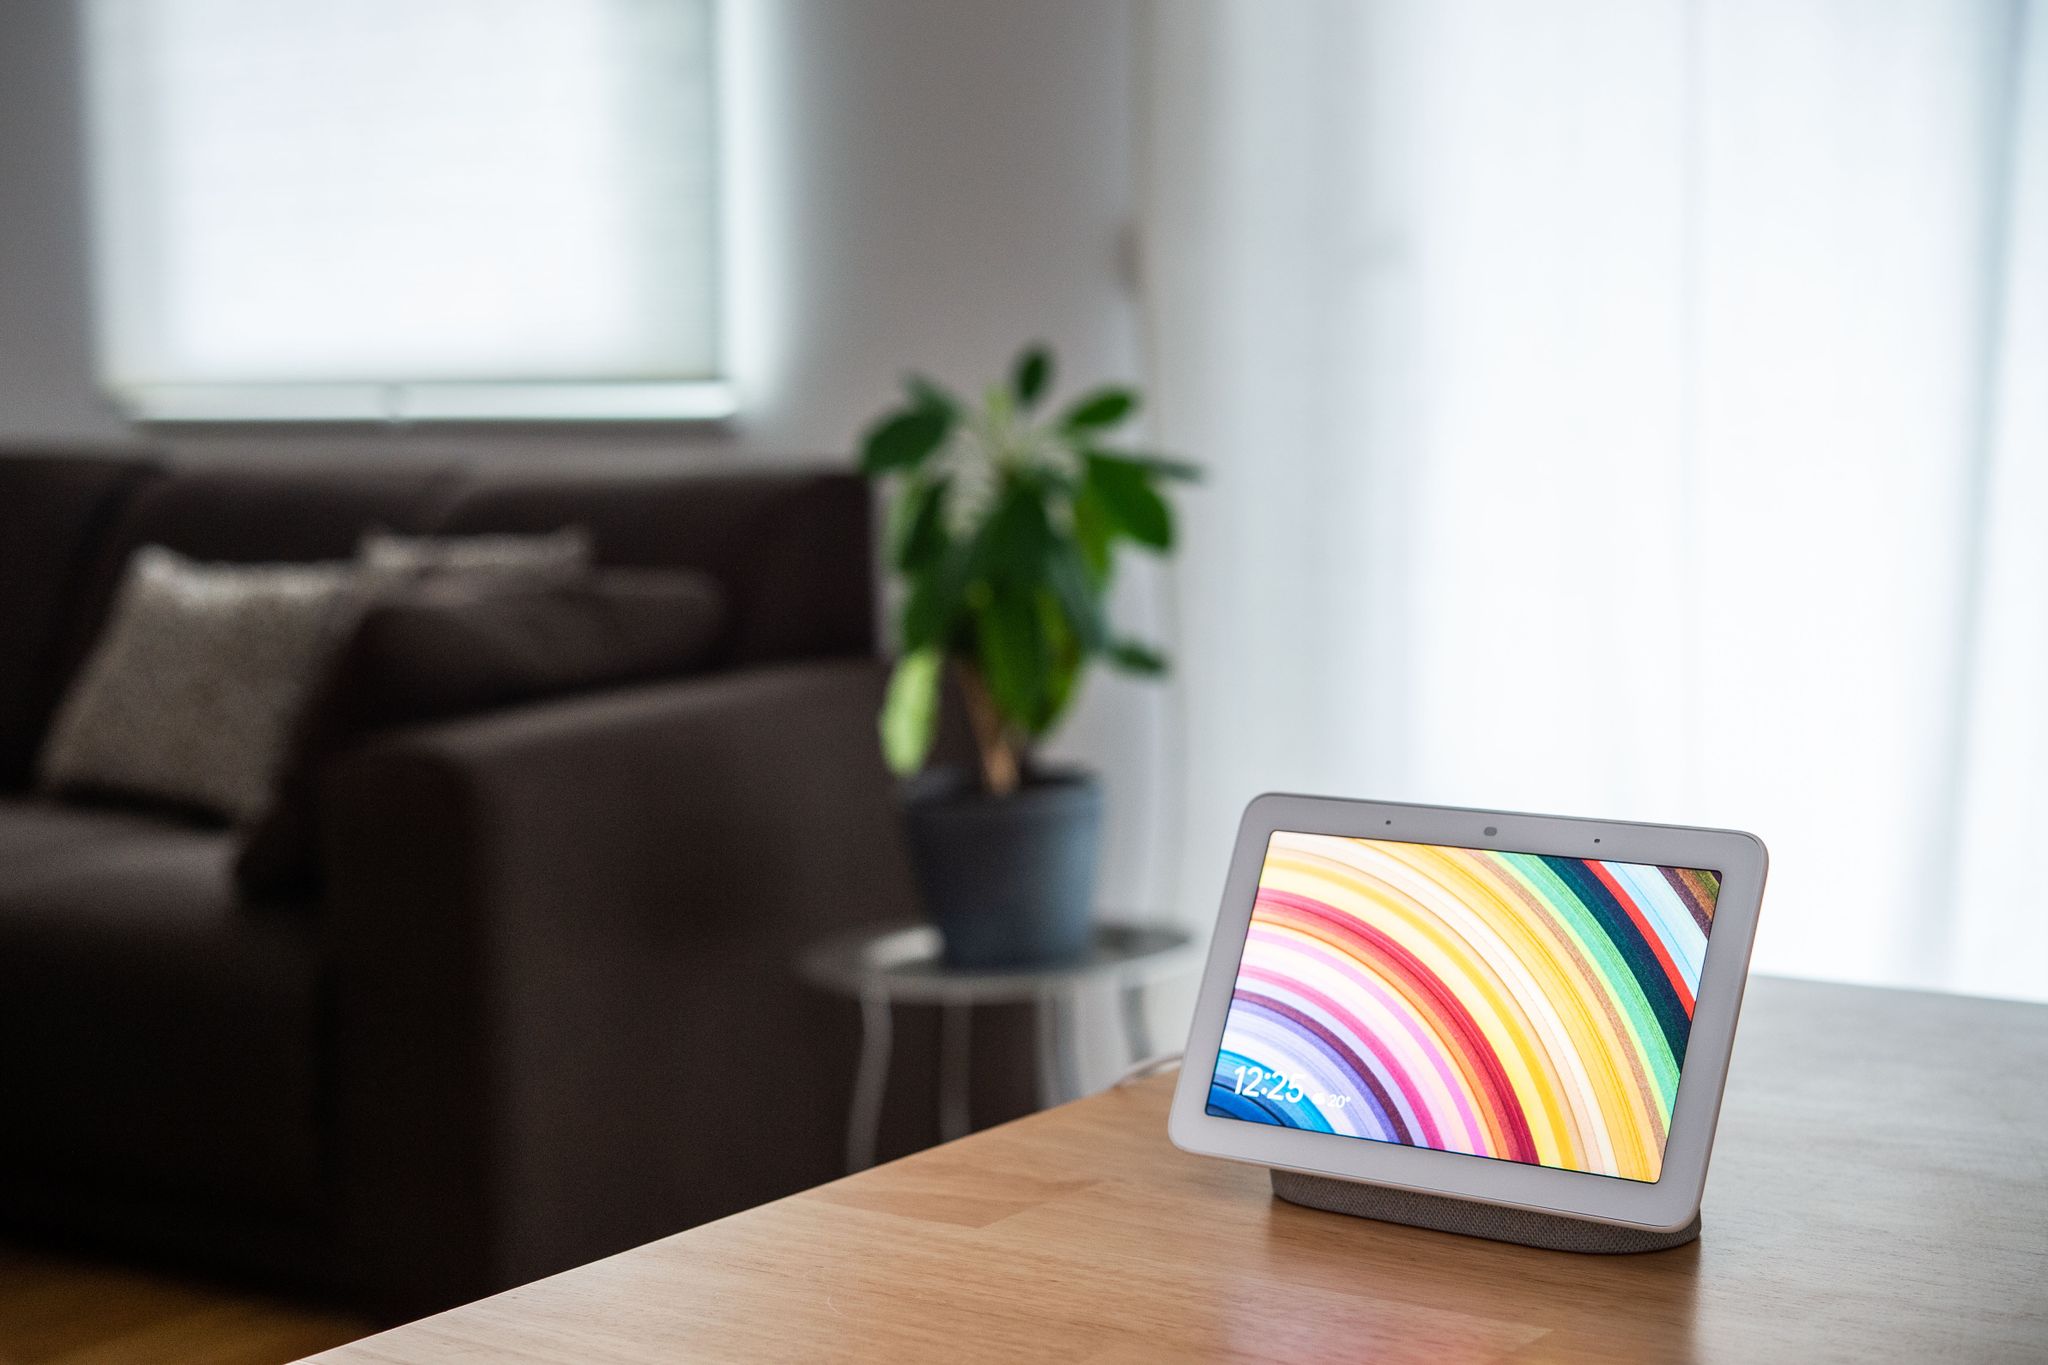 HANDOUT - Google anunció que Nest Hub Max, su altavoz inteligente con pantalla y cámara, detectará cuando lo miran para activarse, prescindiendo de la necesidad de la orden verbal "Ok, Google". Foto: Arne Immanuel Bänsch/dpa